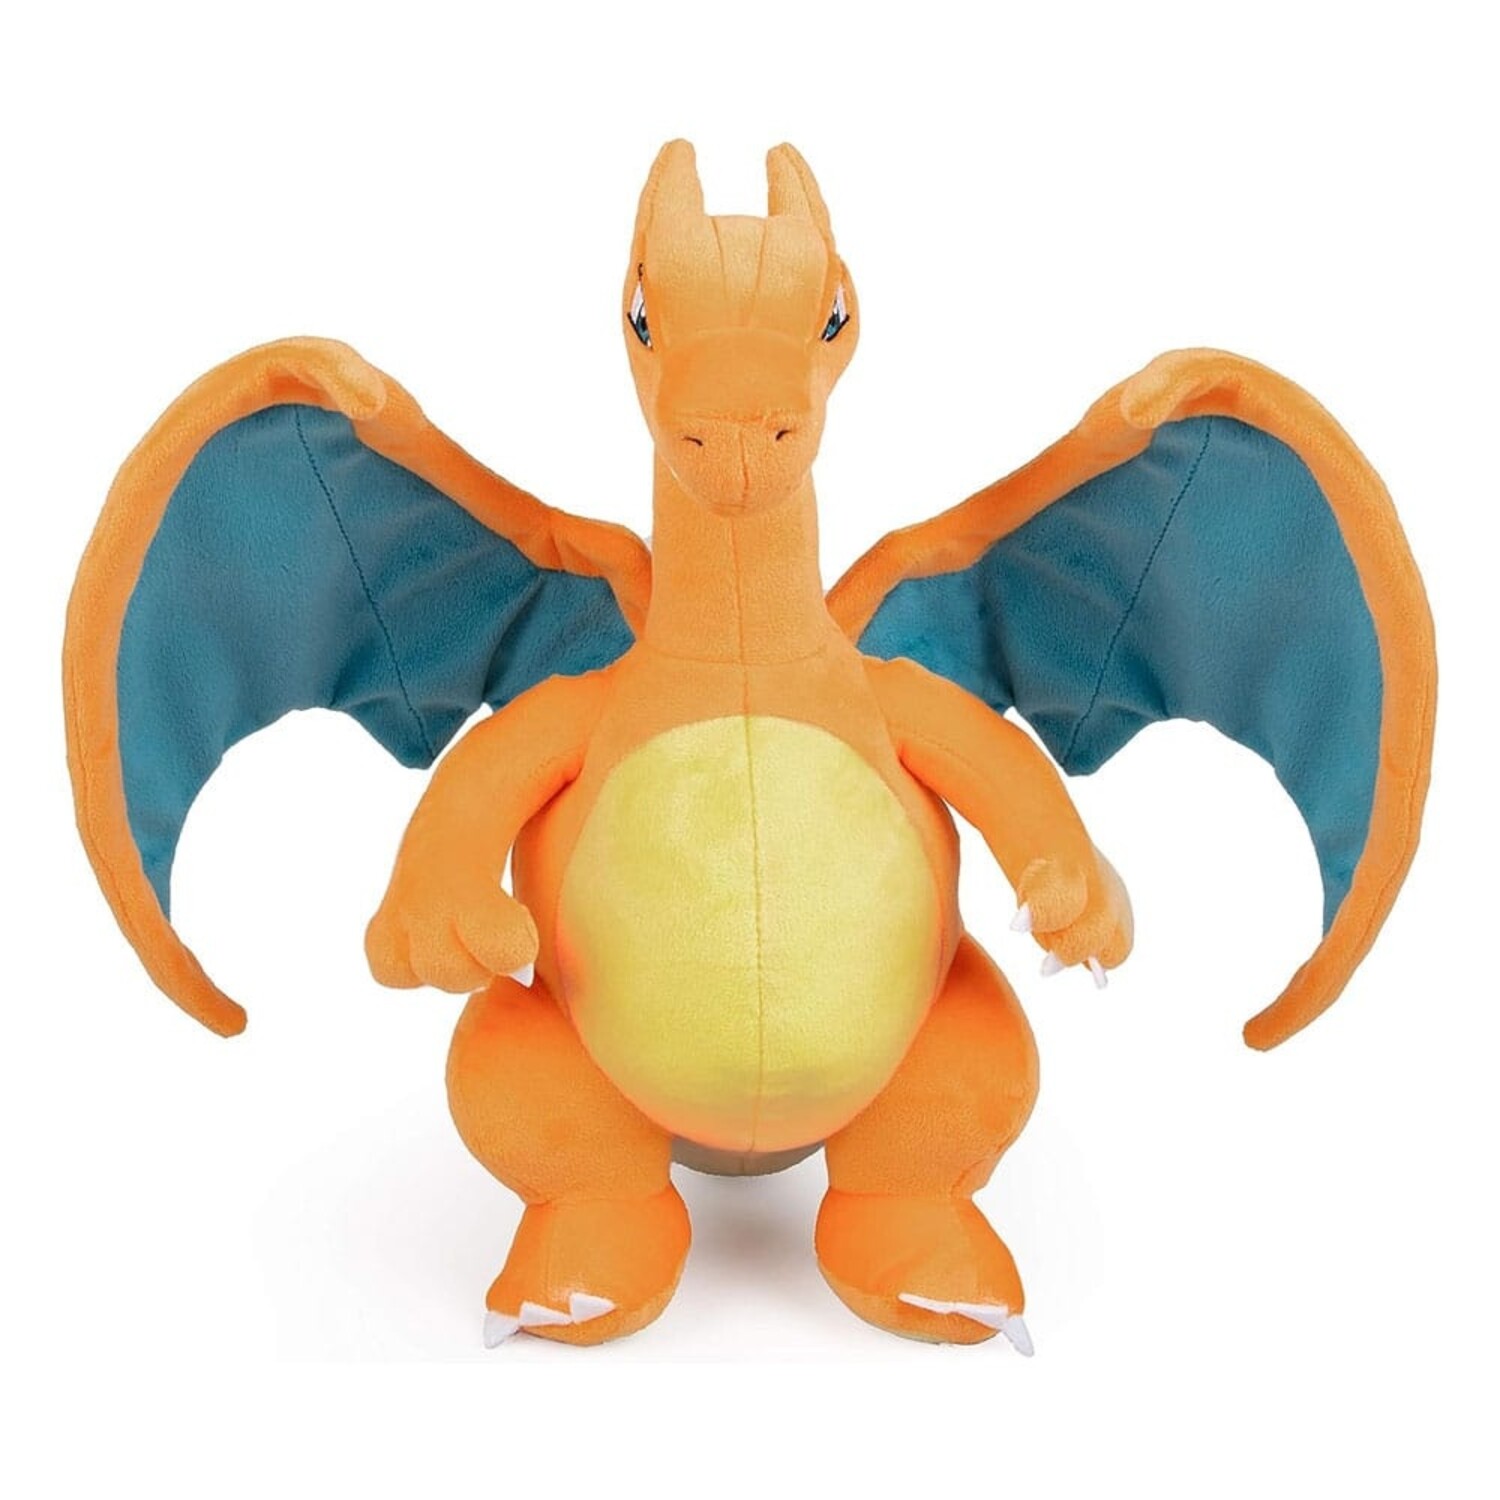 Pokémon Knuffel Charizard 30 cm - Planet Fantasy